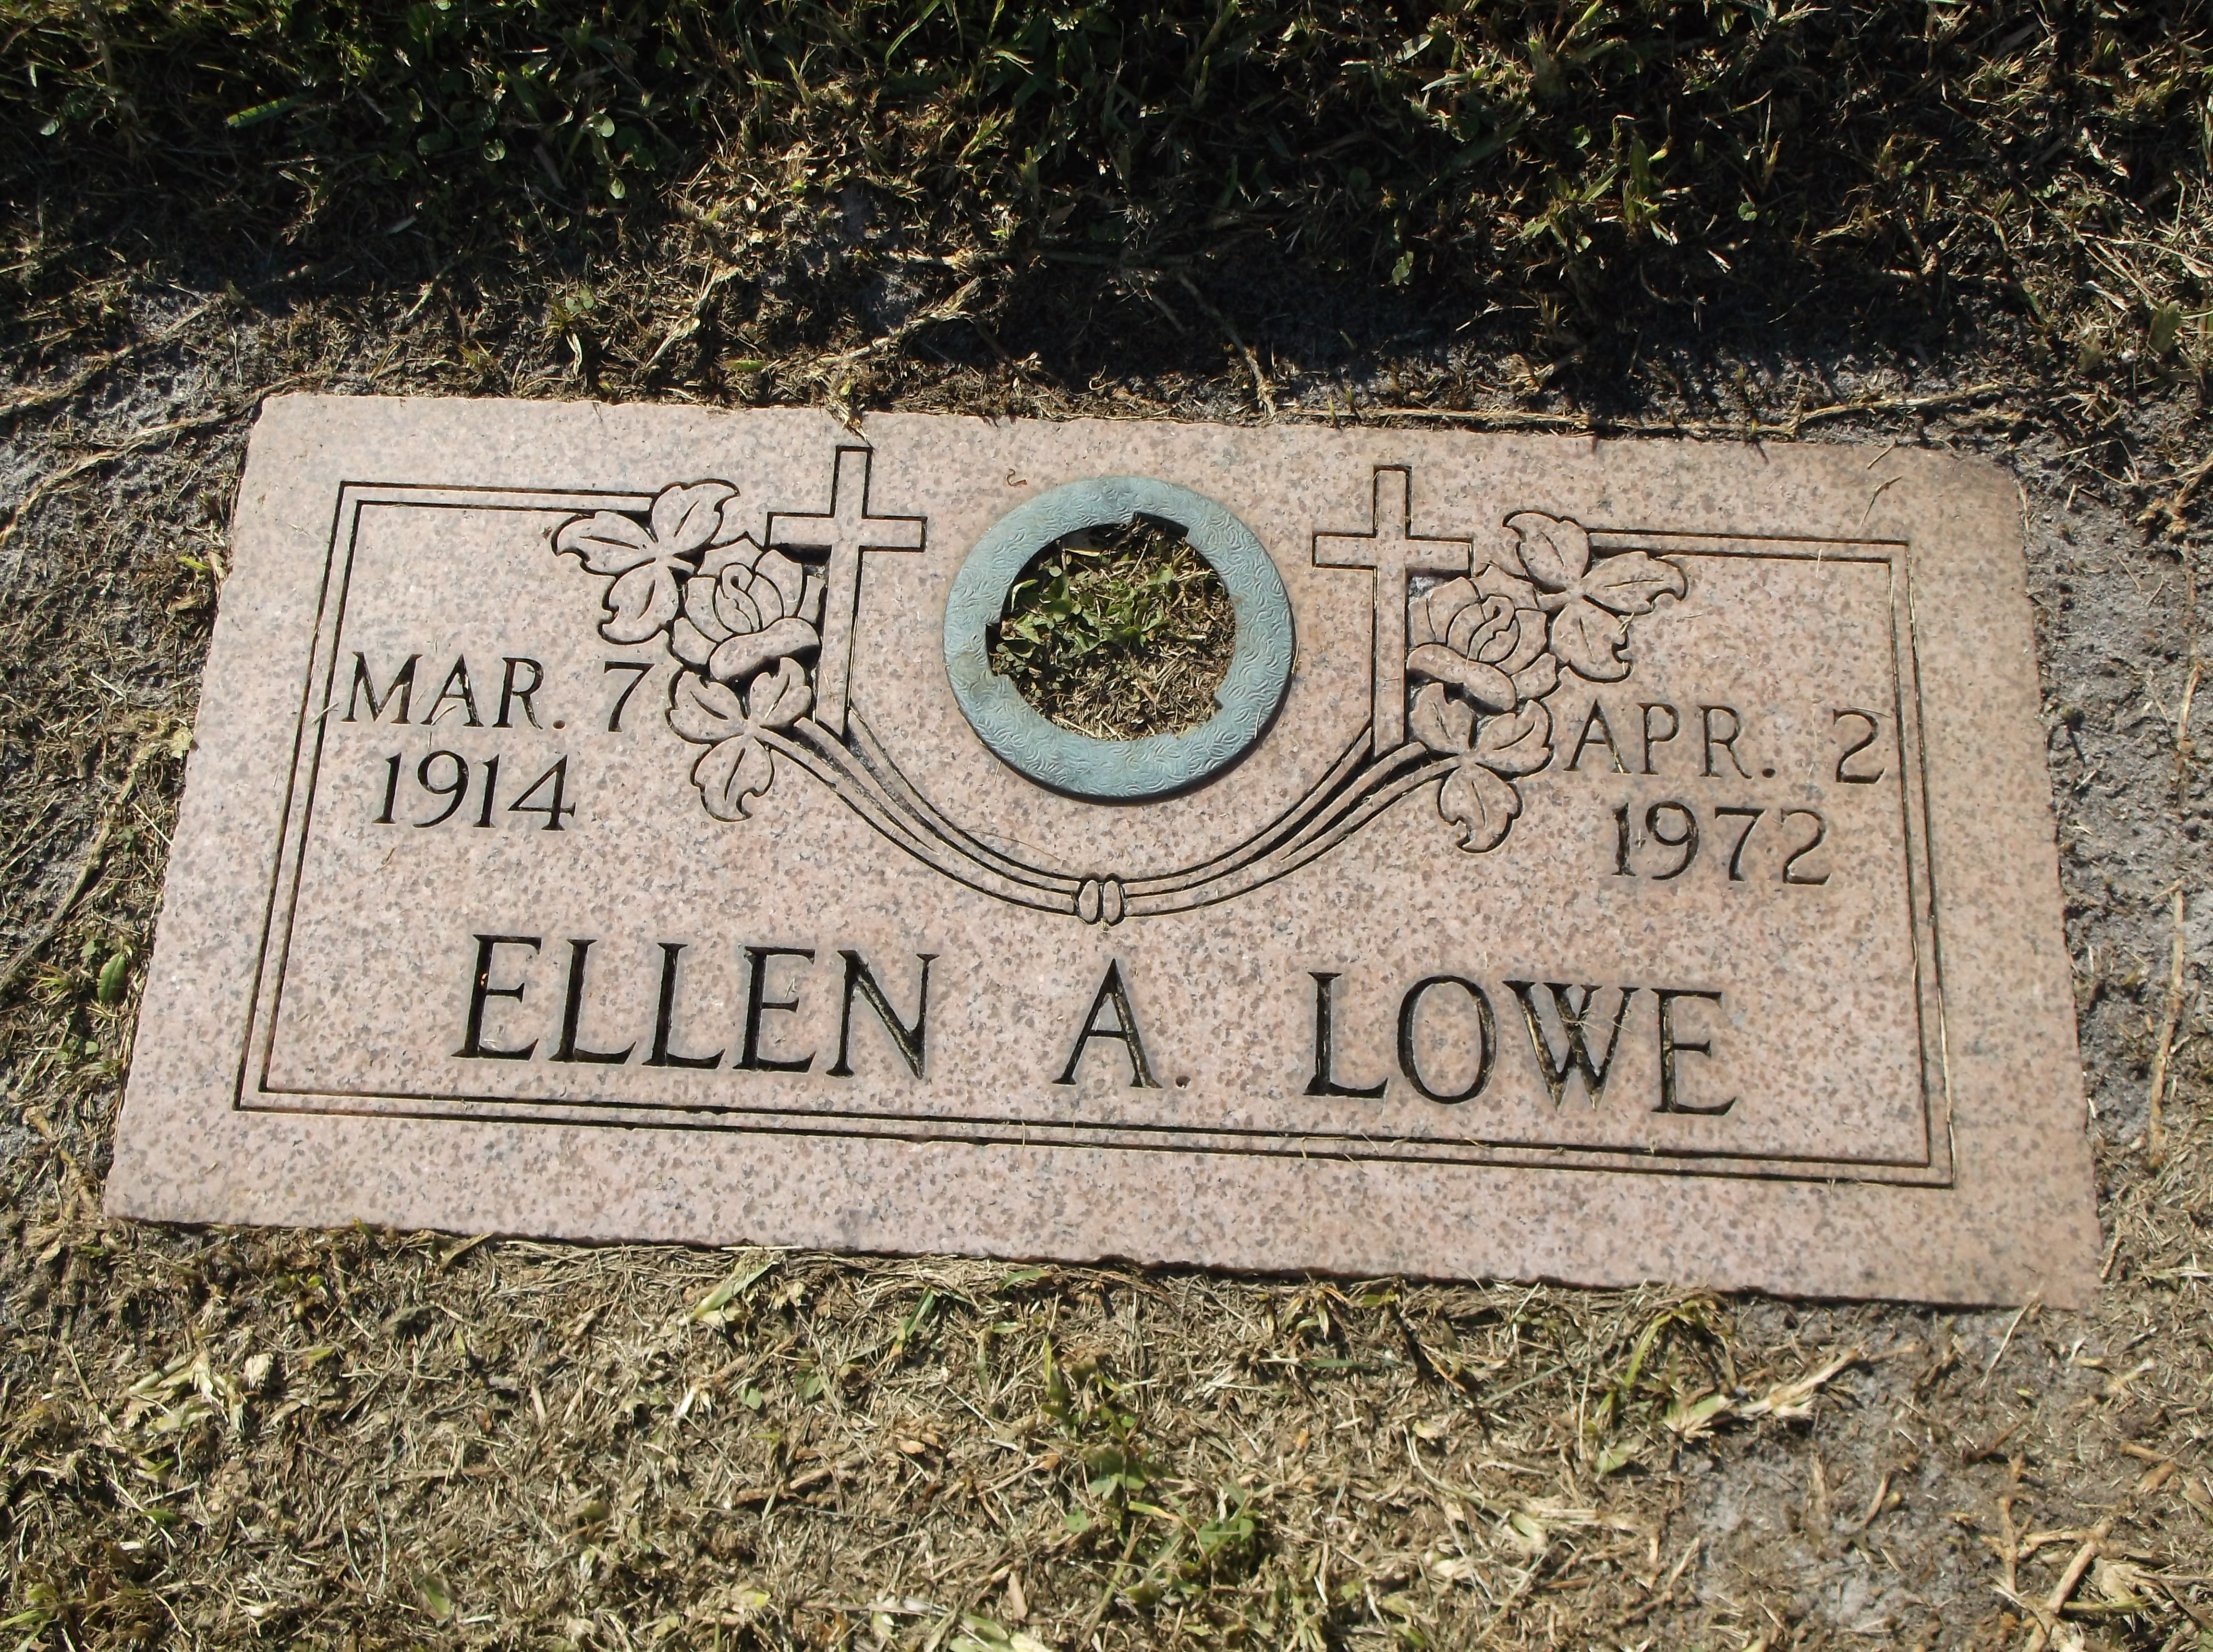 Ellen A Lowe